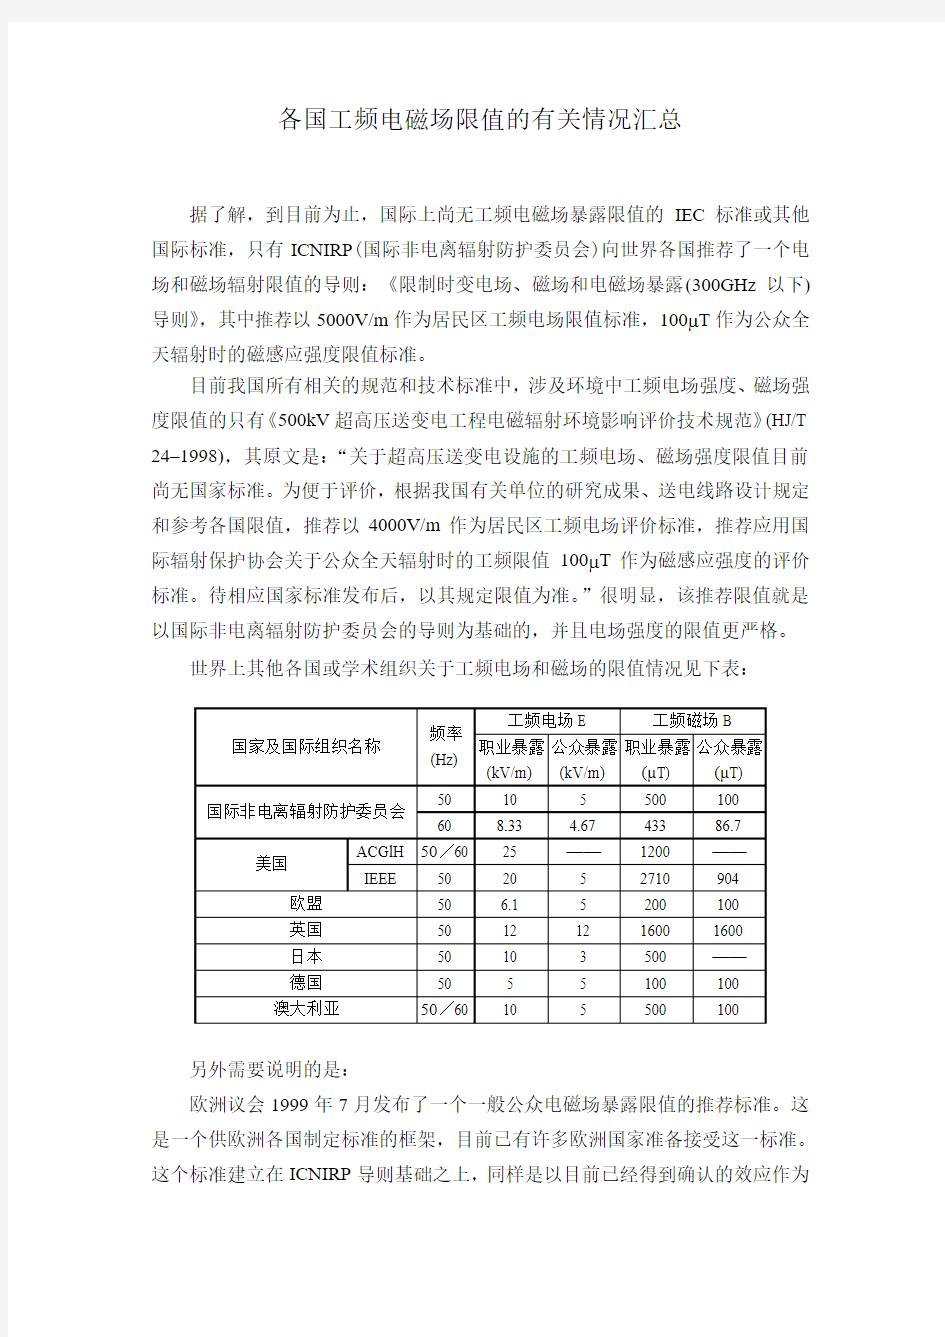 电磁辐射暴露限值和测量方法-上海辐射环境监督站